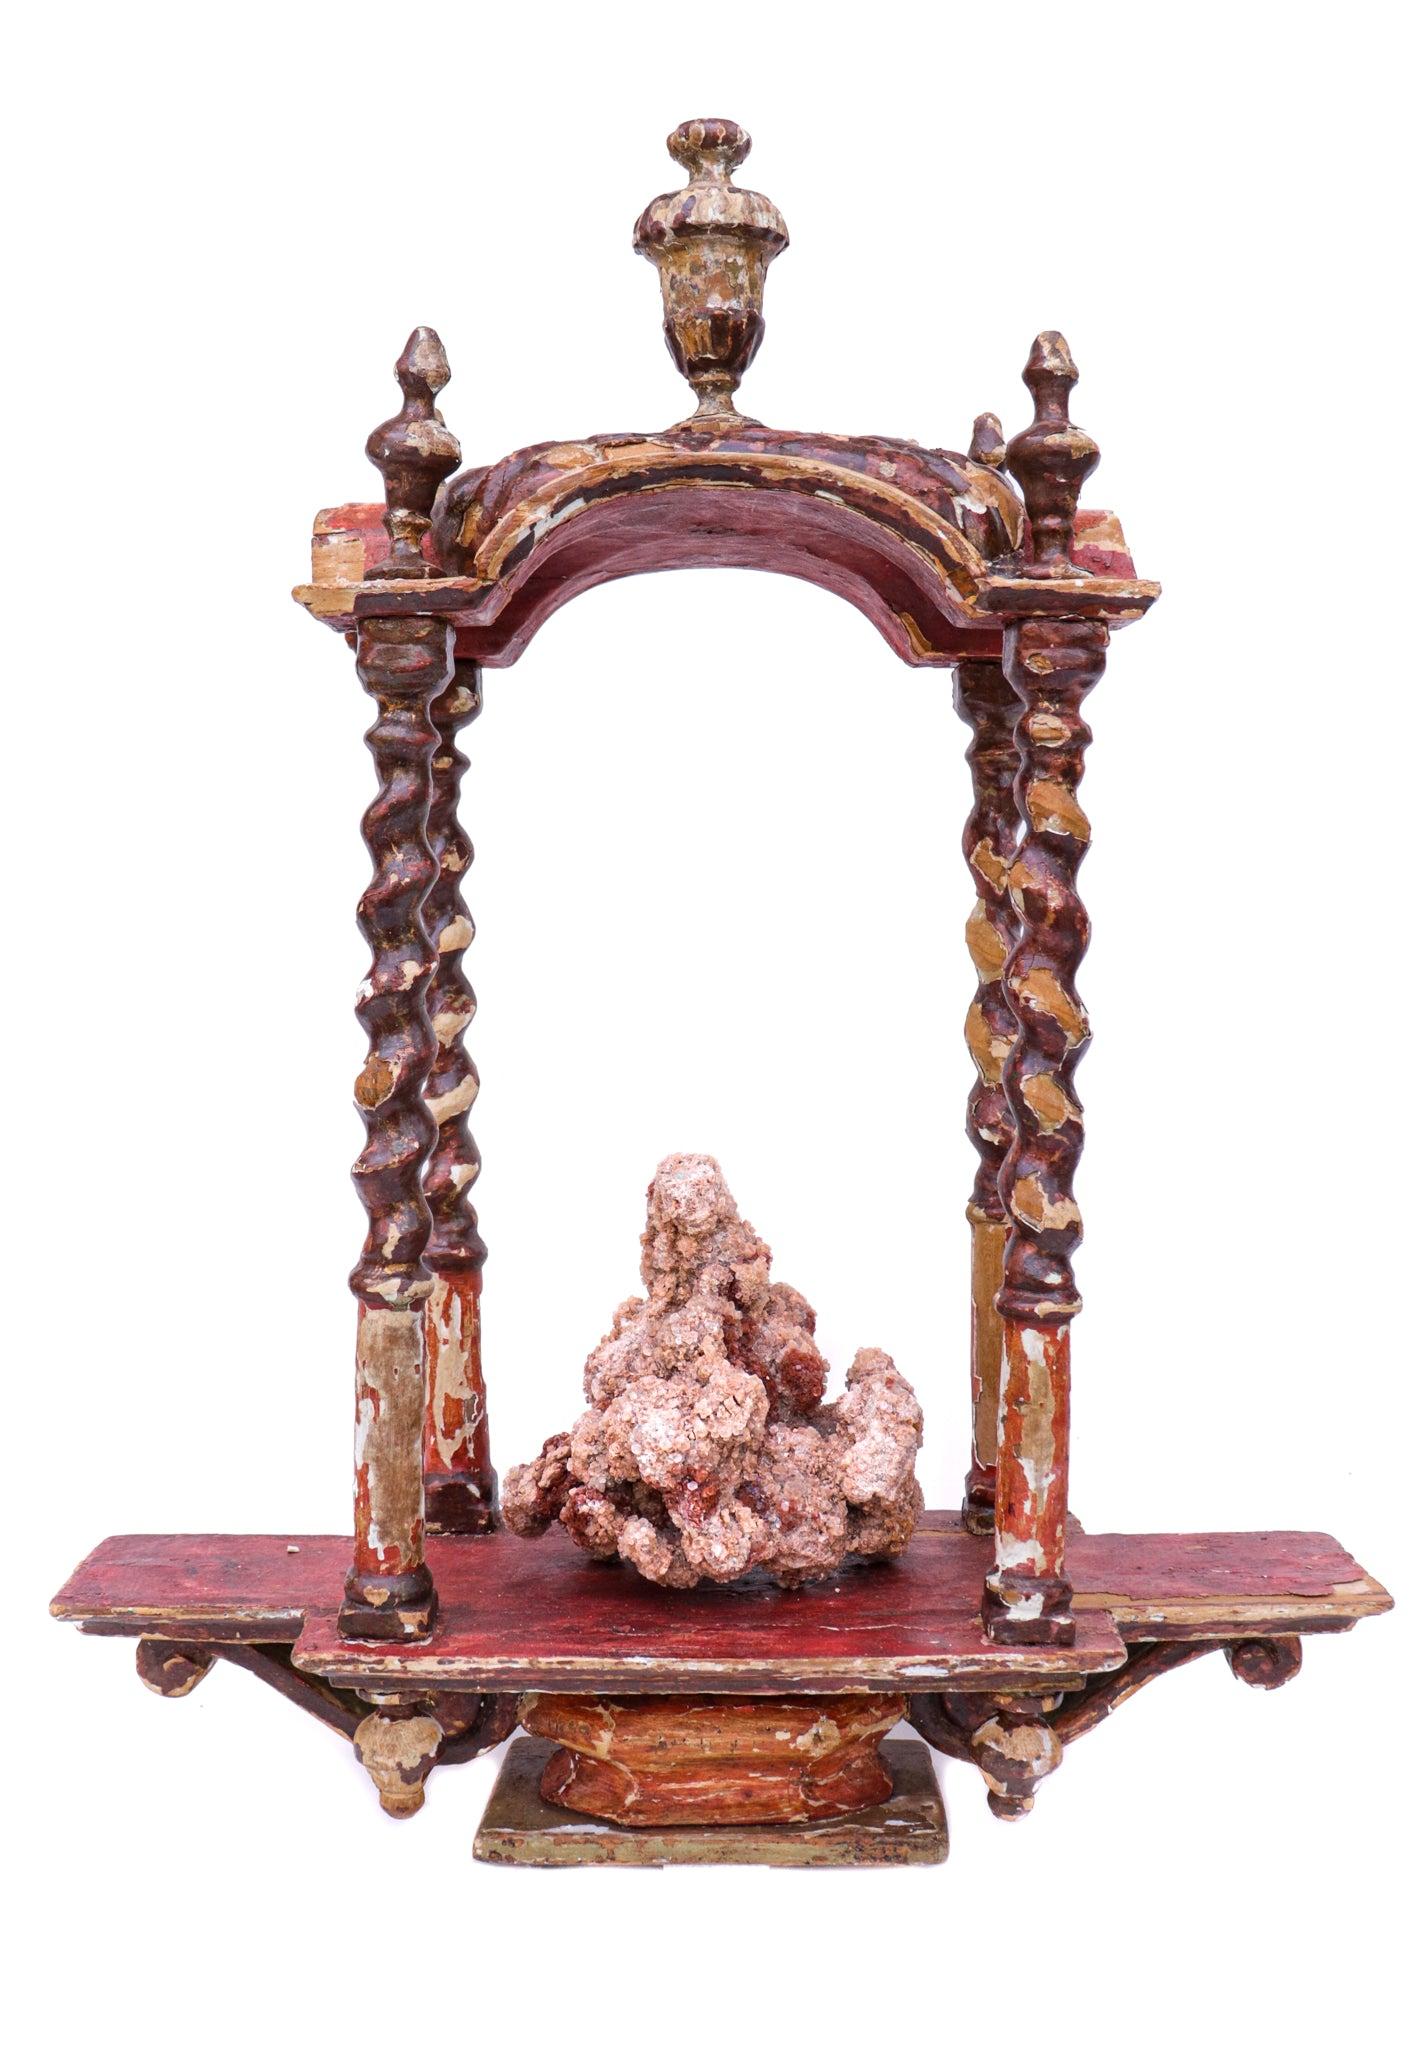 tabernacle italien du 18ème siècle avec aragonite. Il est peint à la main et sculpté avec des détails de volutes et a été conservé dans son état d'origine. Le tabernacle était à l'origine utilisé dans une église italienne historique comme 